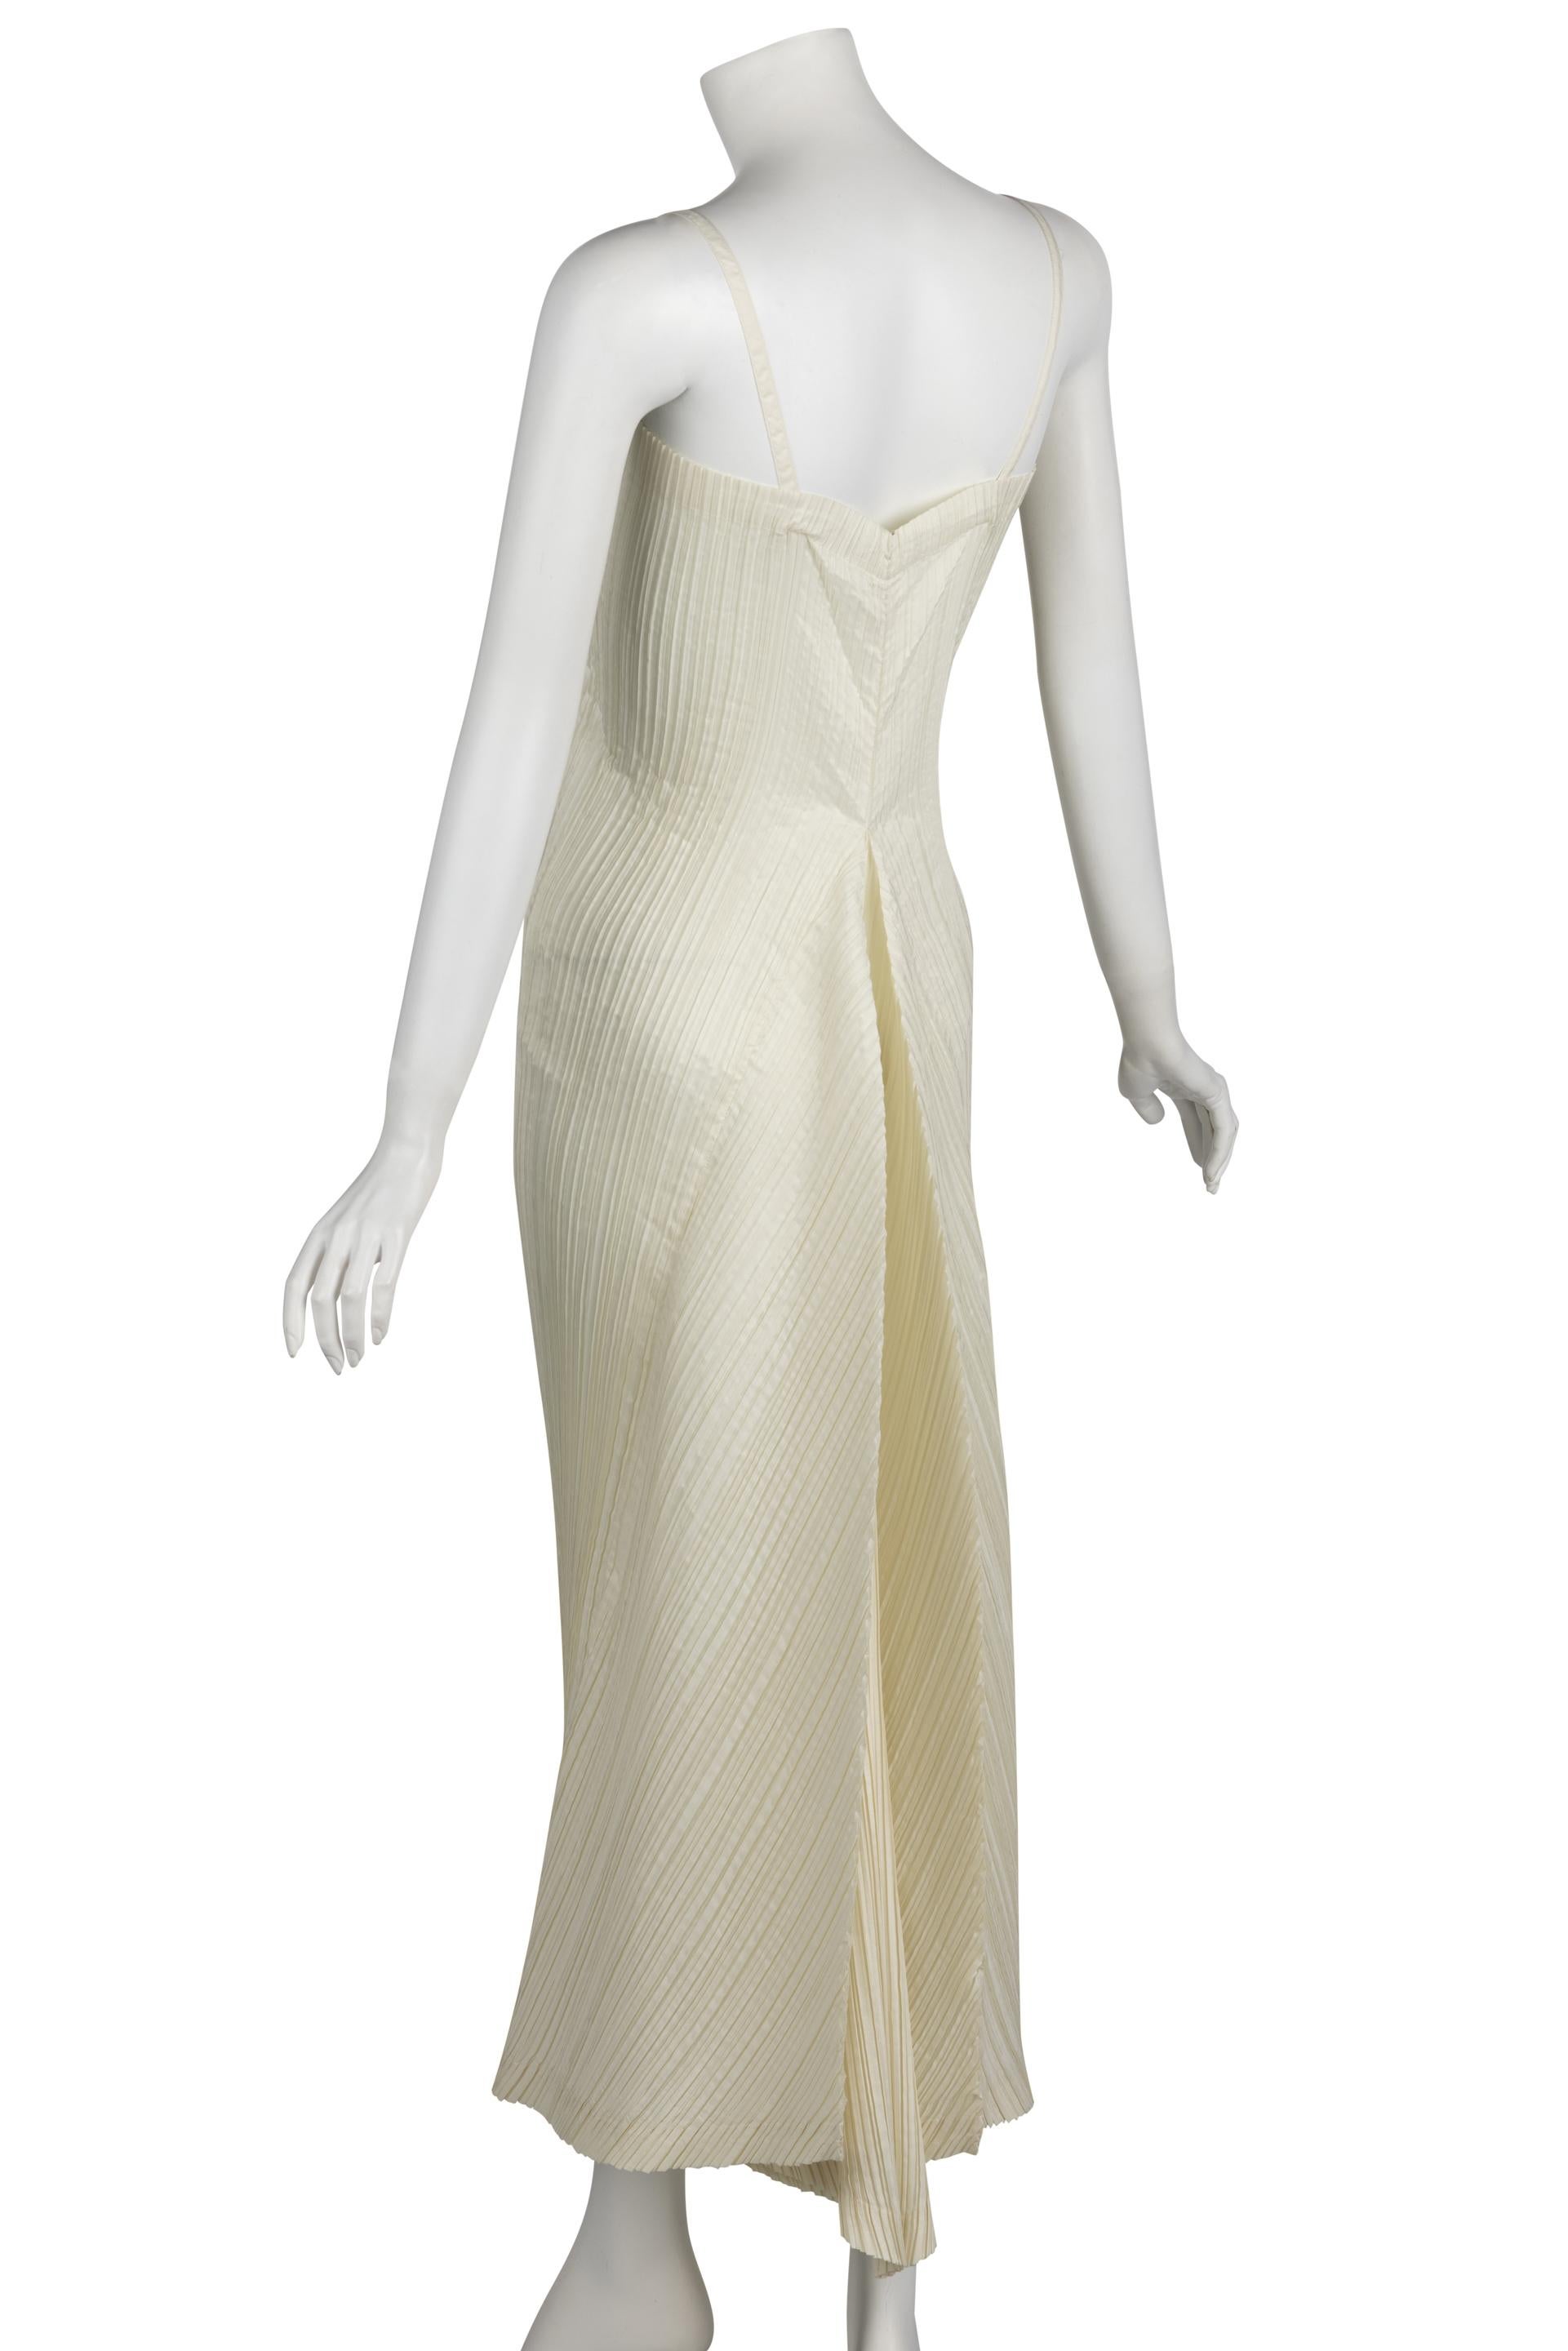  Vintage Issey Miyake Ivory Sleeveless Sculptural Dress Museum Held, 1980s  1